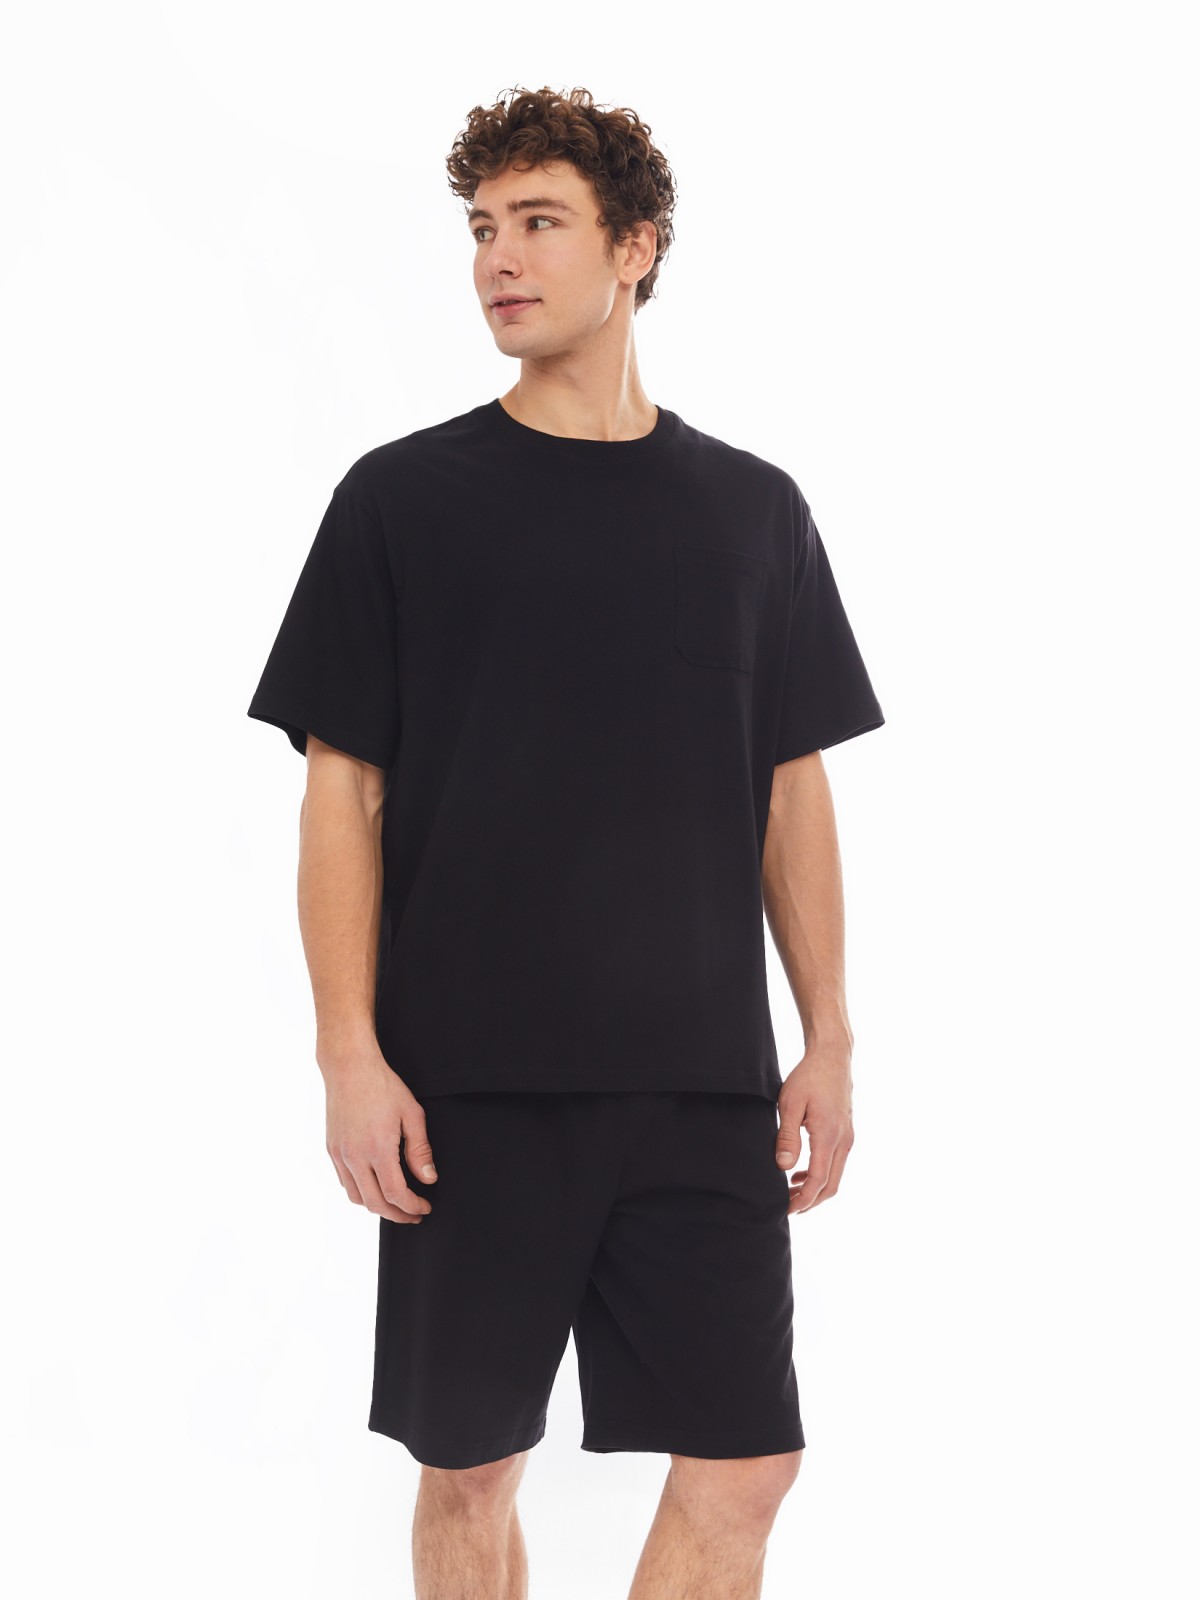 Домашний комплект из хлопка (футболка, шорты) zolla 61413870W041, цвет черный, размер S - фото 1